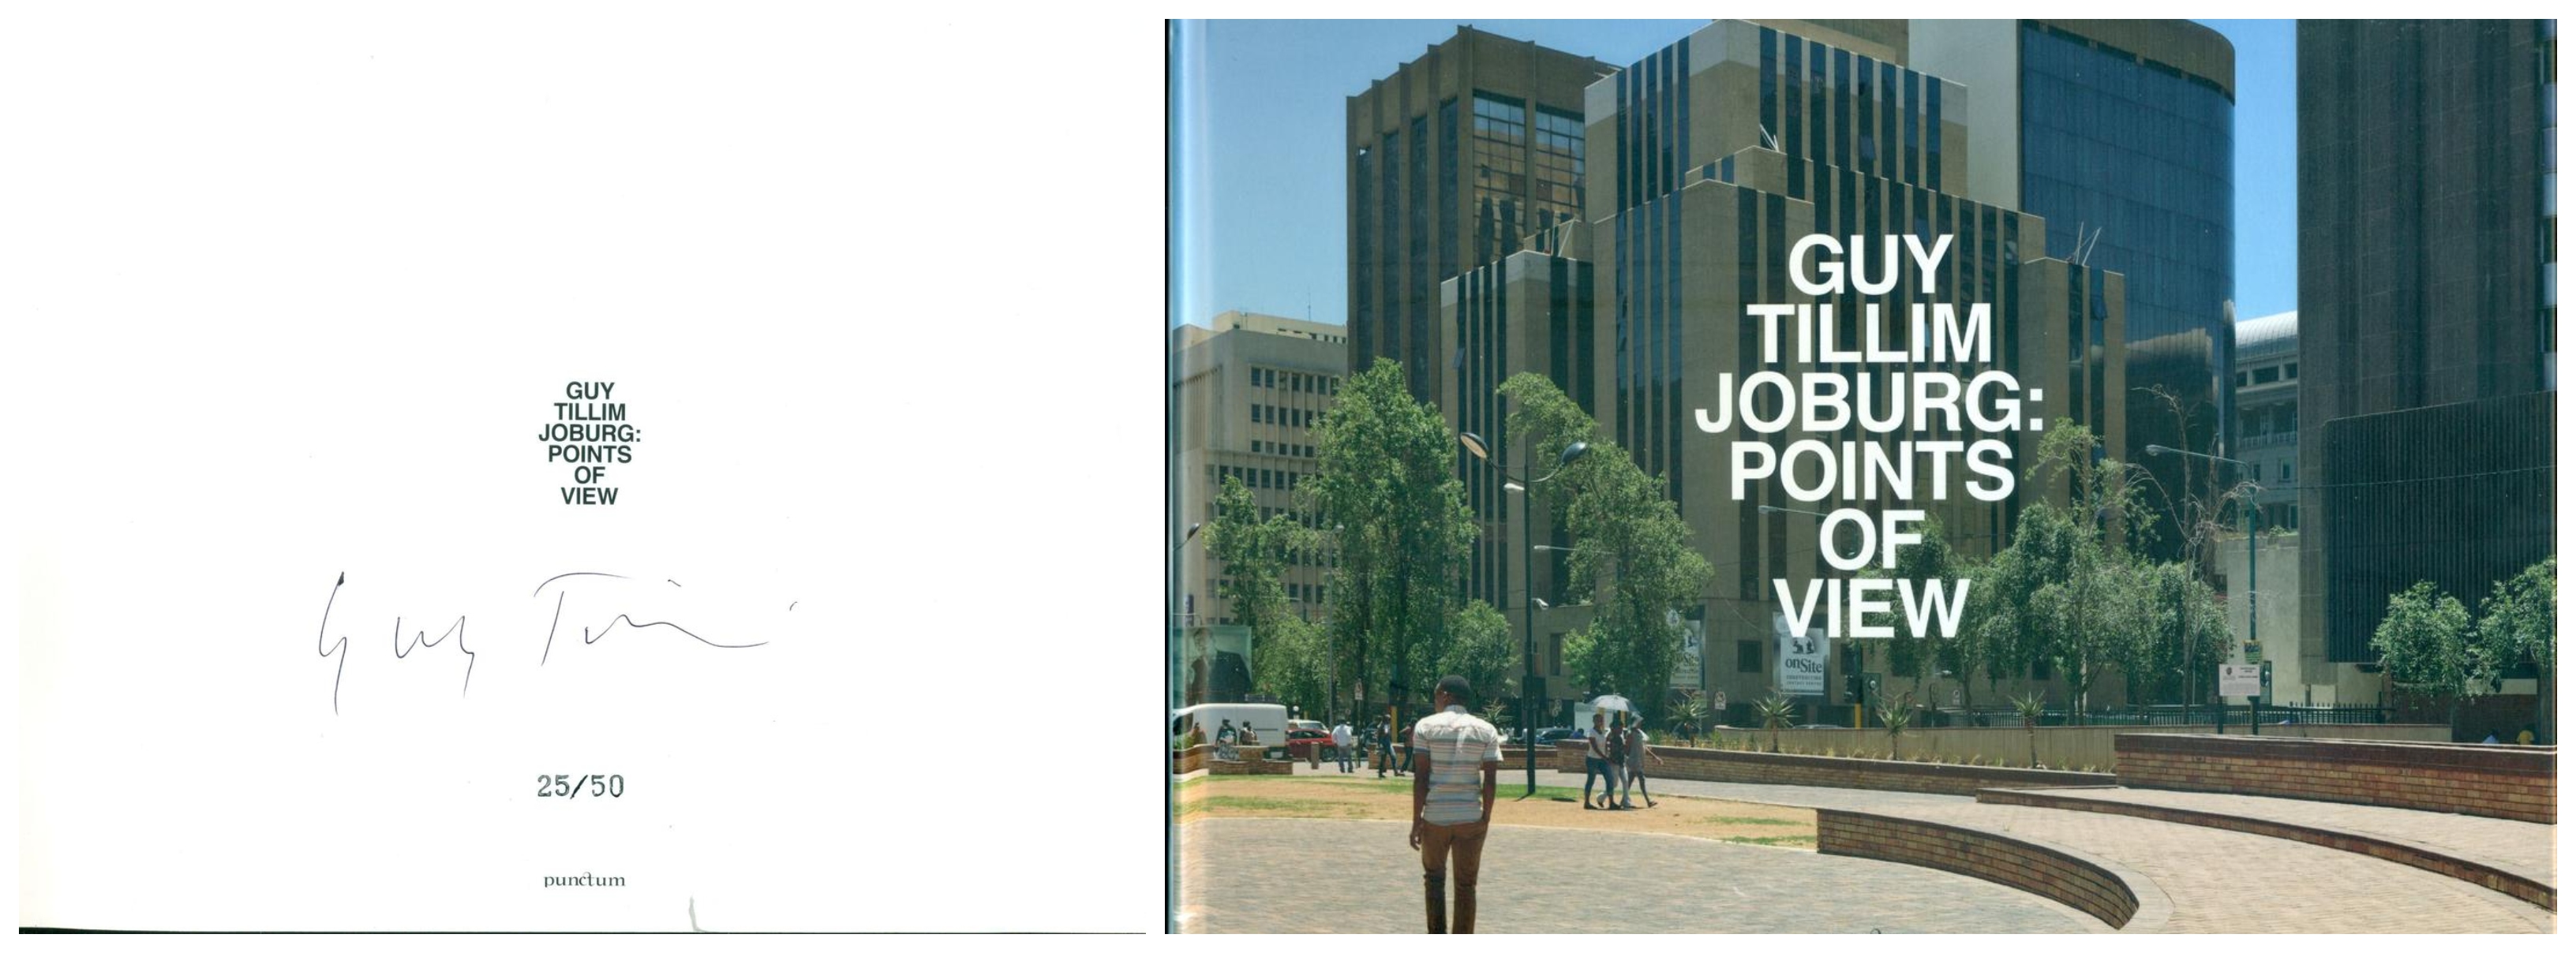 Joburg: Points of View - TILLIM, Guy (Johannesburg, 1962)